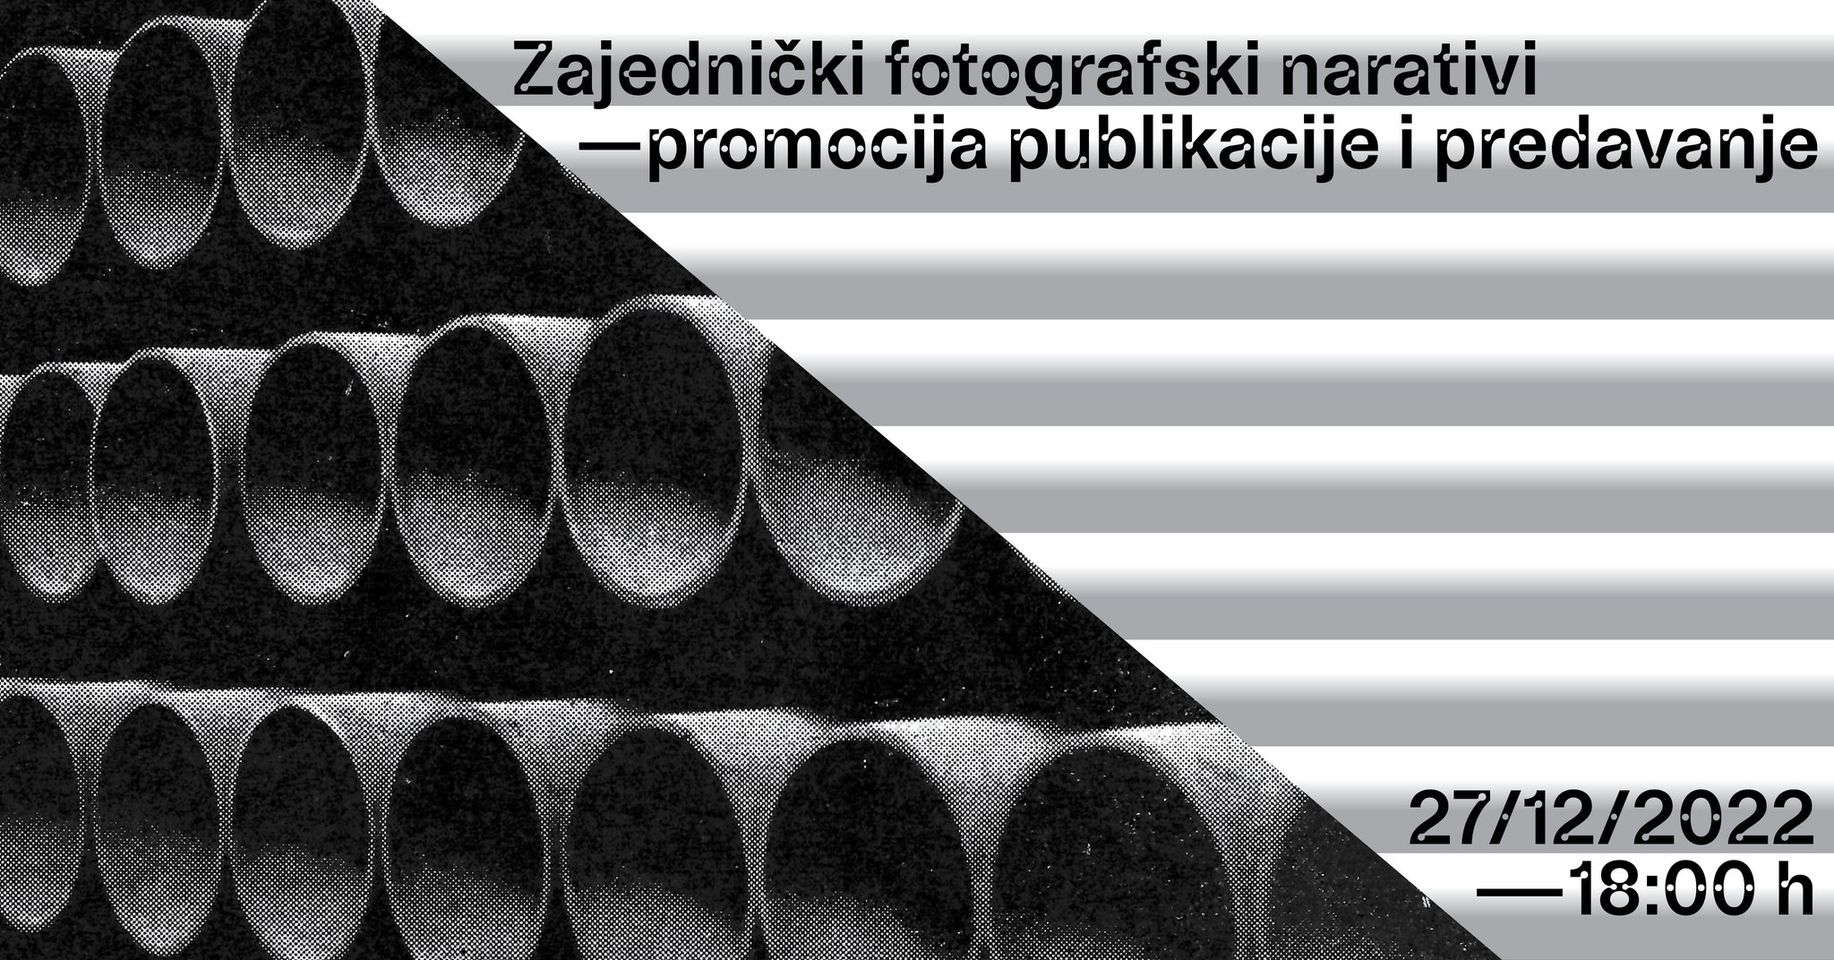 You are currently viewing Zajednički fotografski narativi: promocija publikacije i predavanje